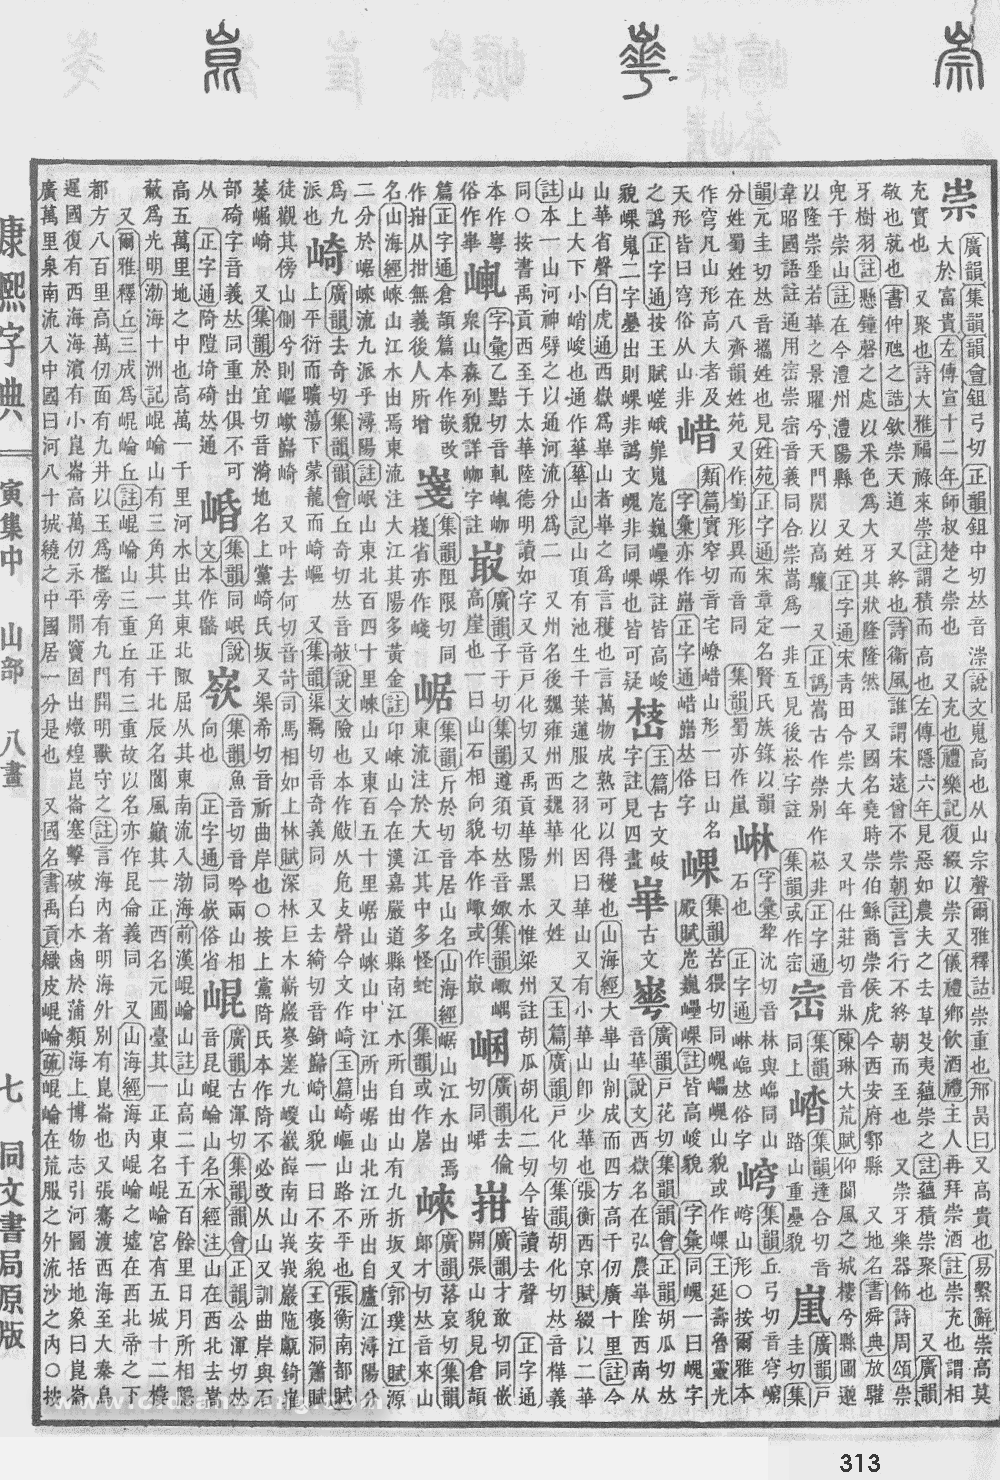 康熙字典掃描版第313頁